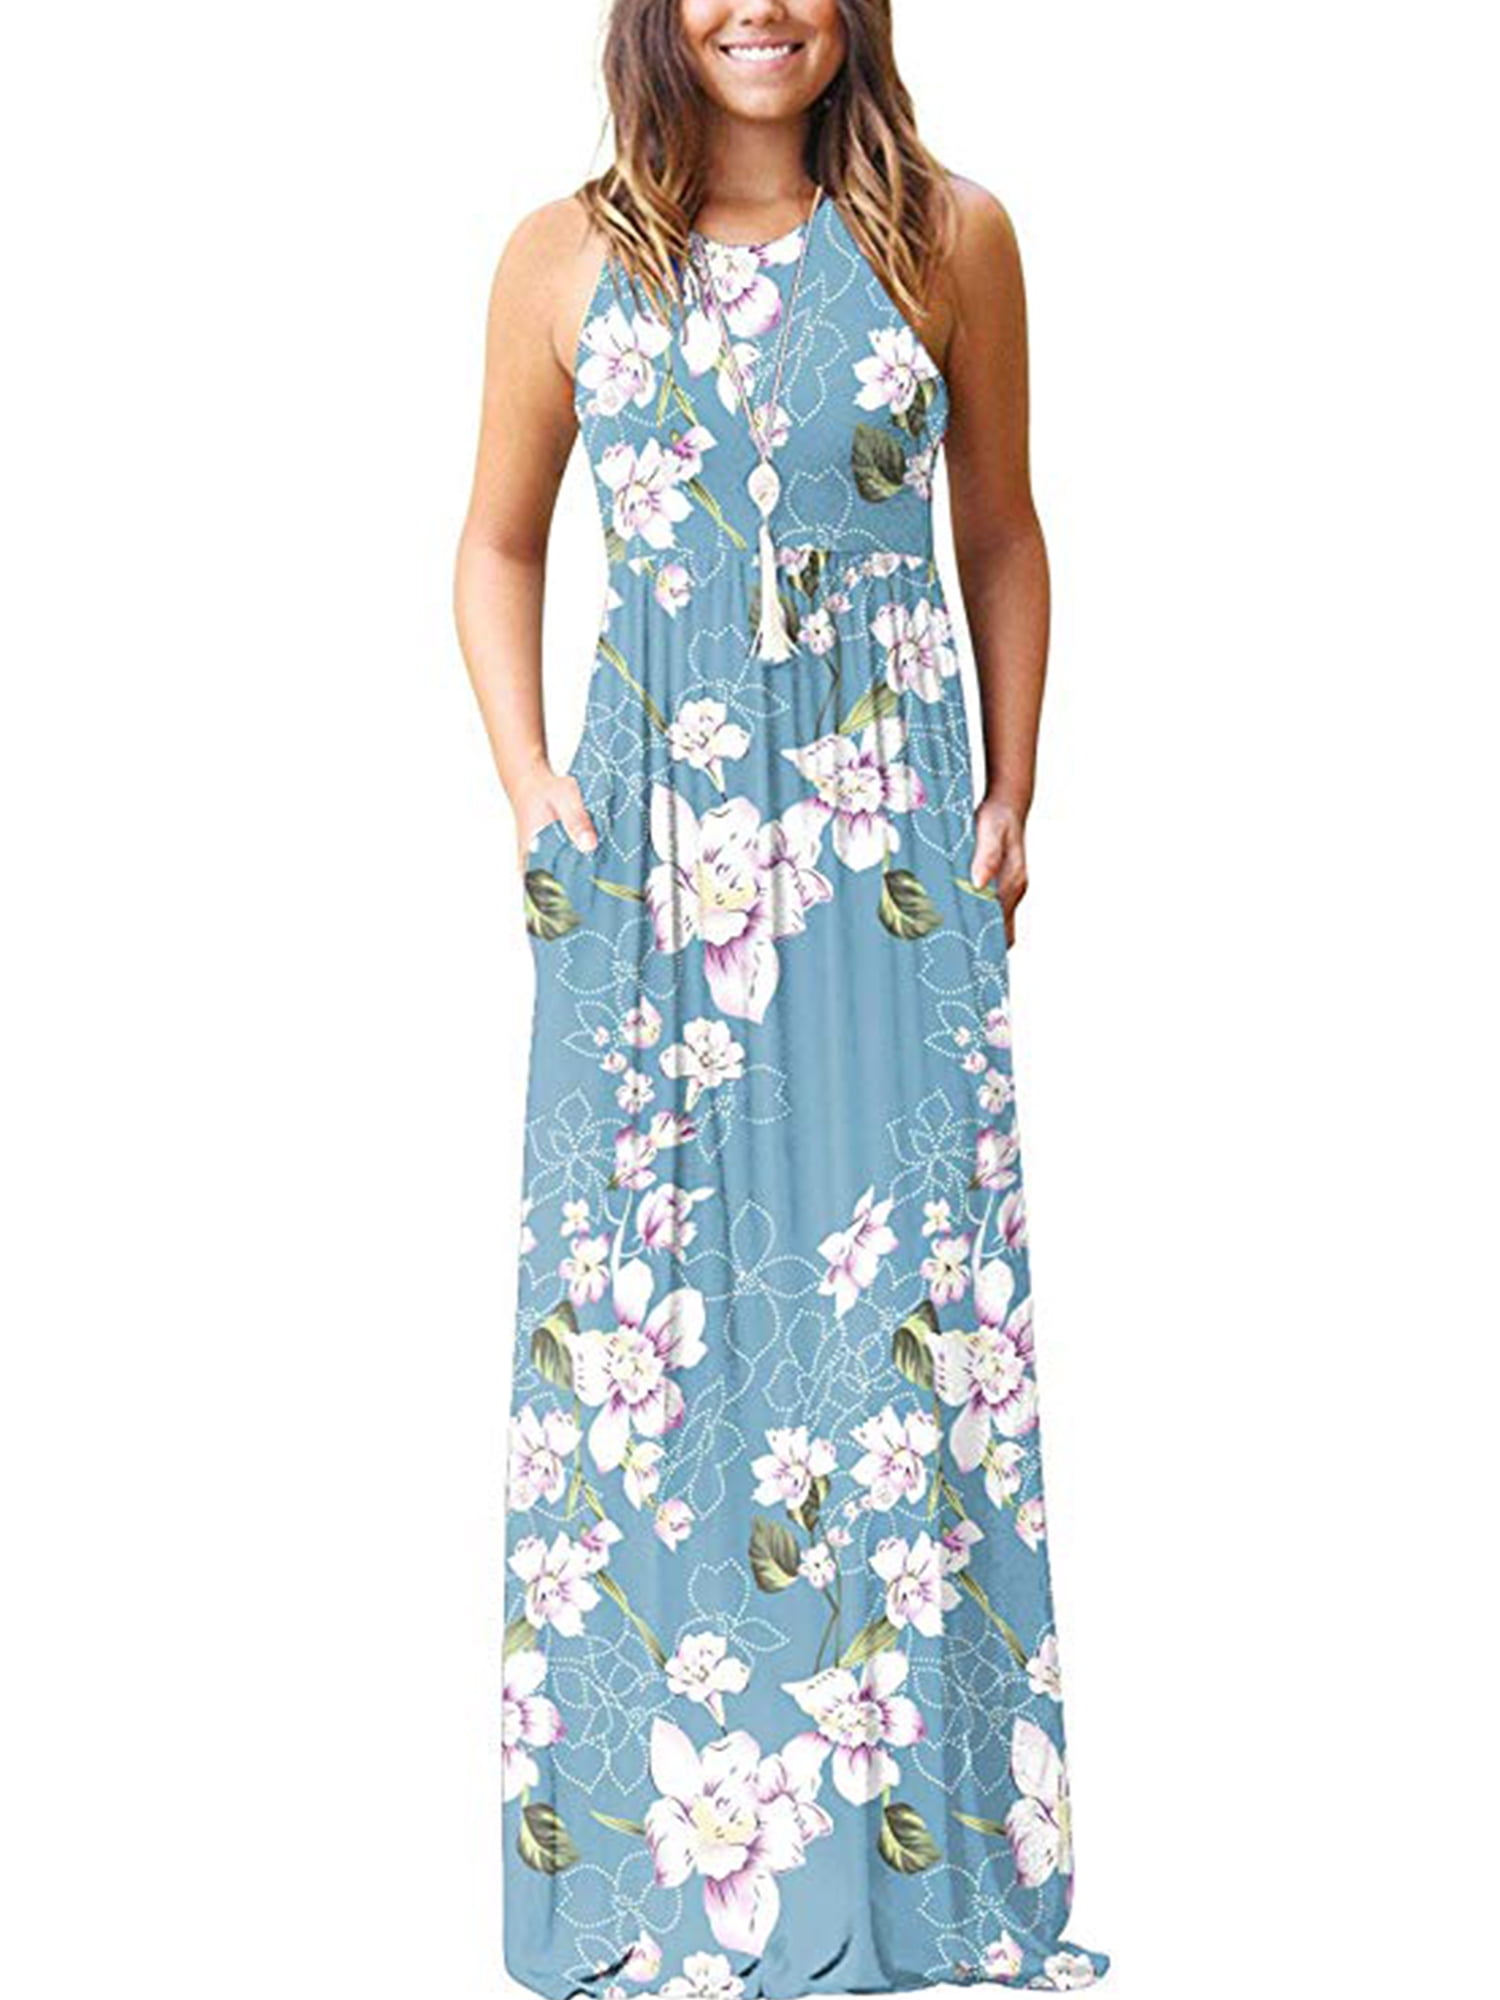 New Women Floral Maxi Dress Prom Evening Party Summer Beach Casual Long Sundress